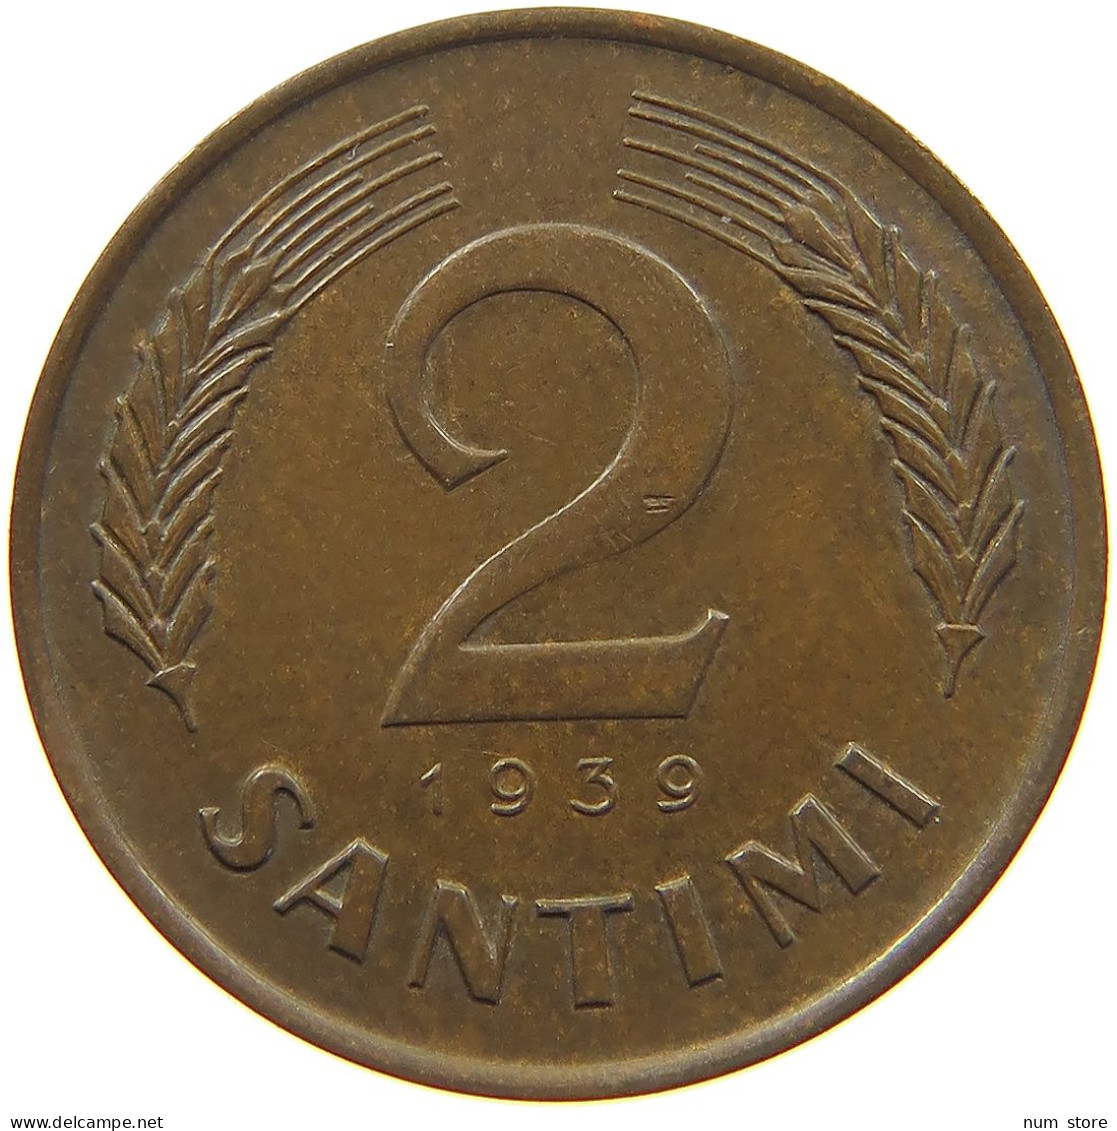 LATVIA 2 SANTIMI 1939  #c016 0573 - Latvia